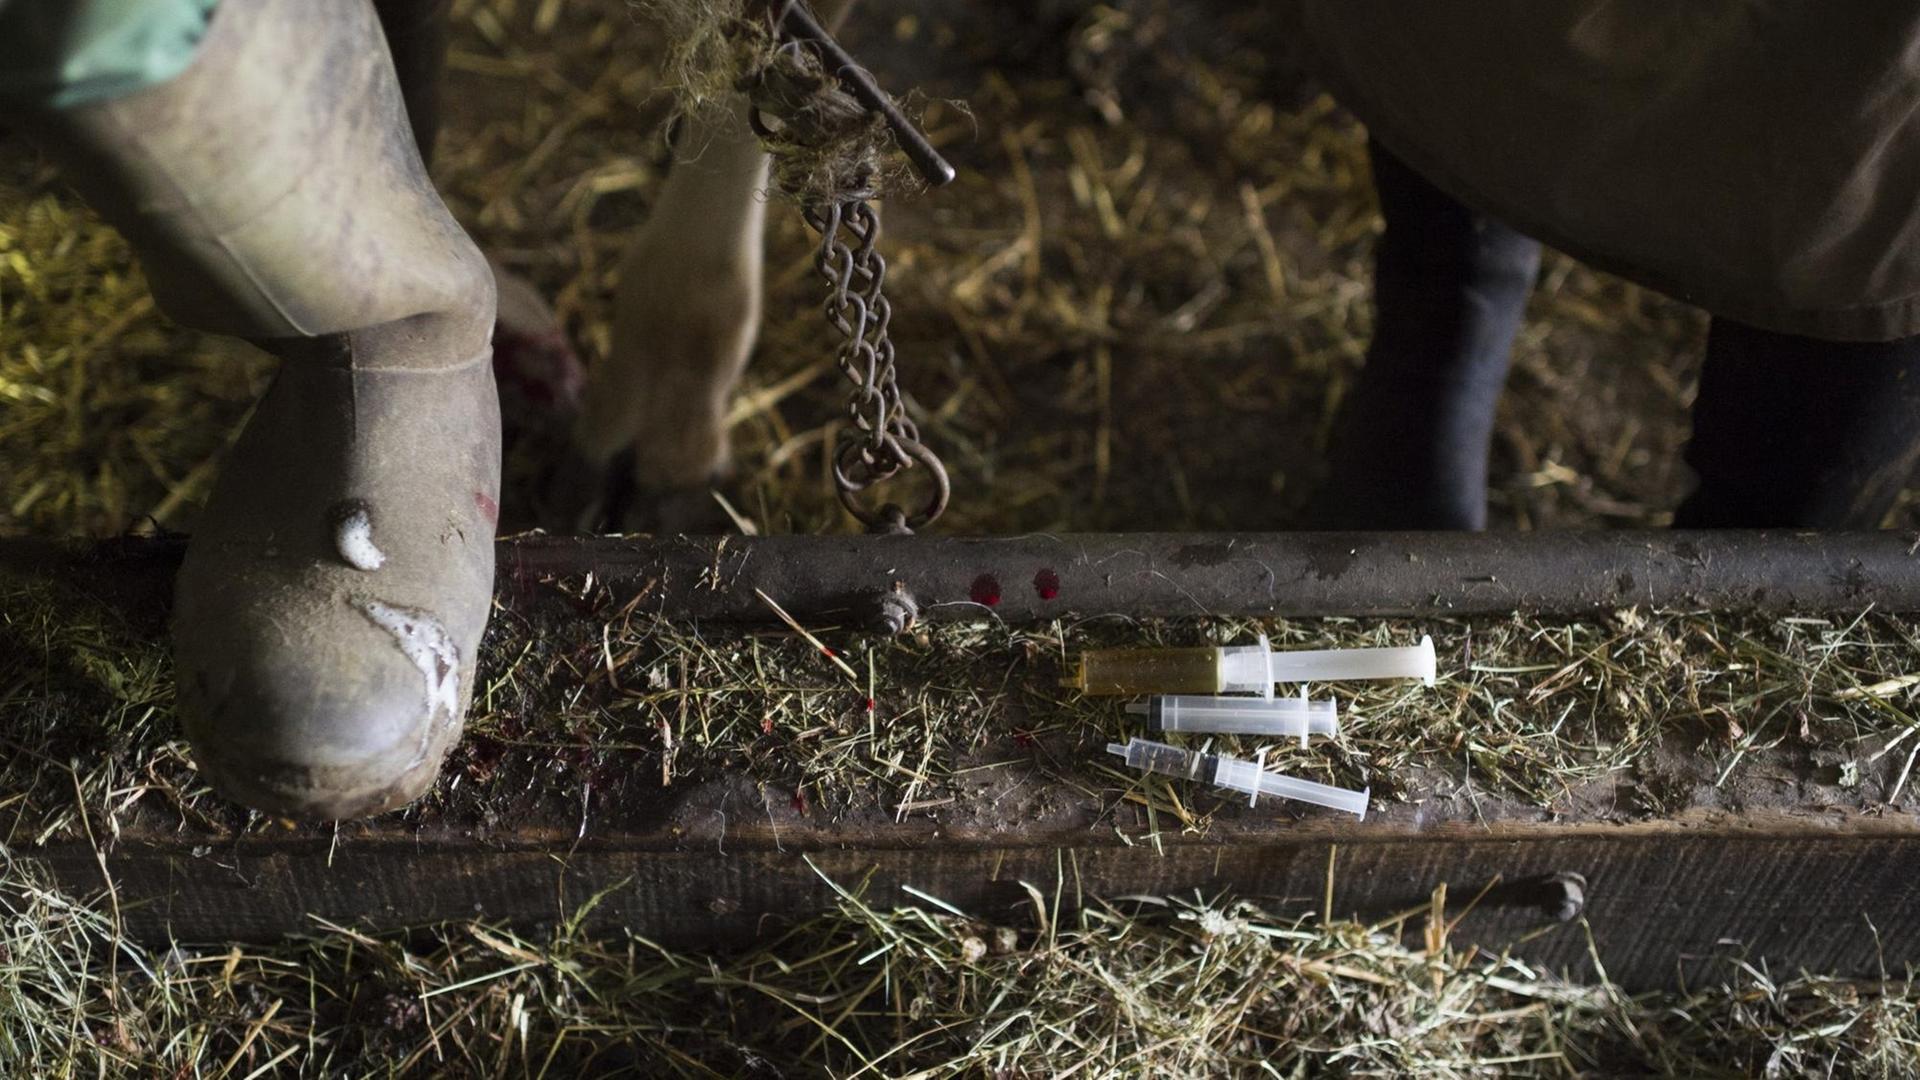 Auf dem Boden eines Kuhstalls liegen Spritzen, die unter anderem mit Antibiotika gefüllt sind